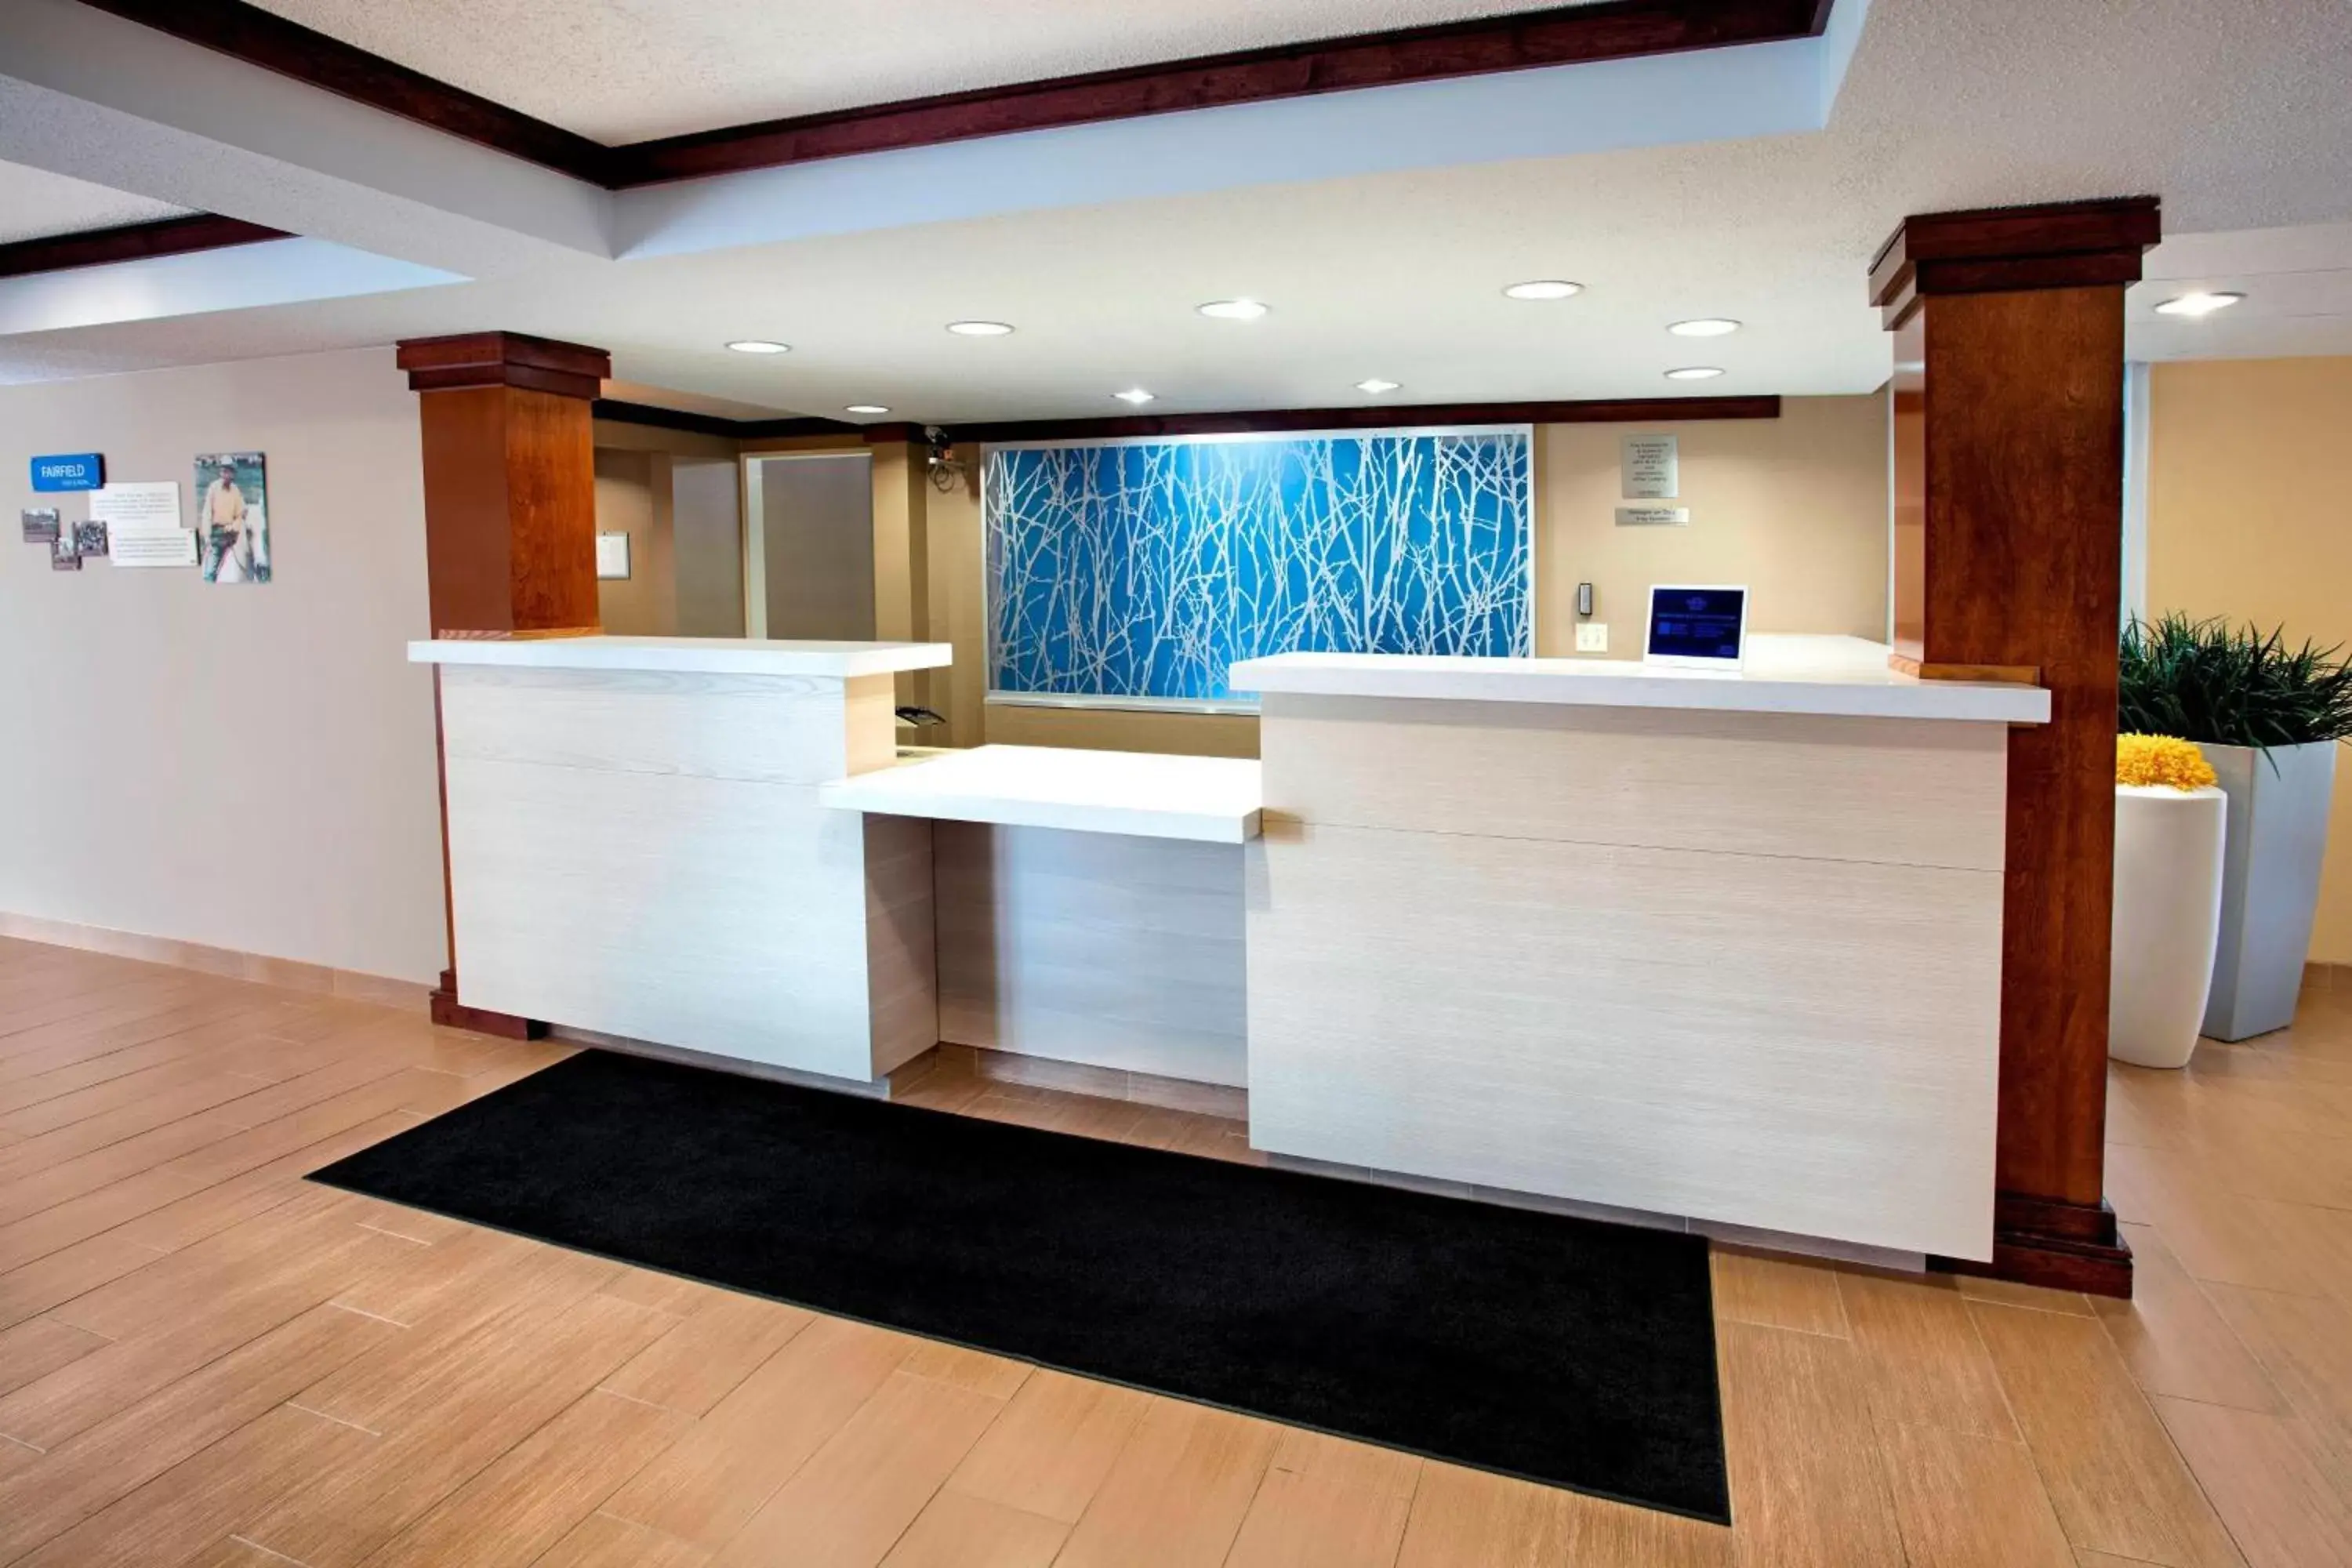 Lobby or reception, Lobby/Reception in Fairfield Inn & Suites Merrillville